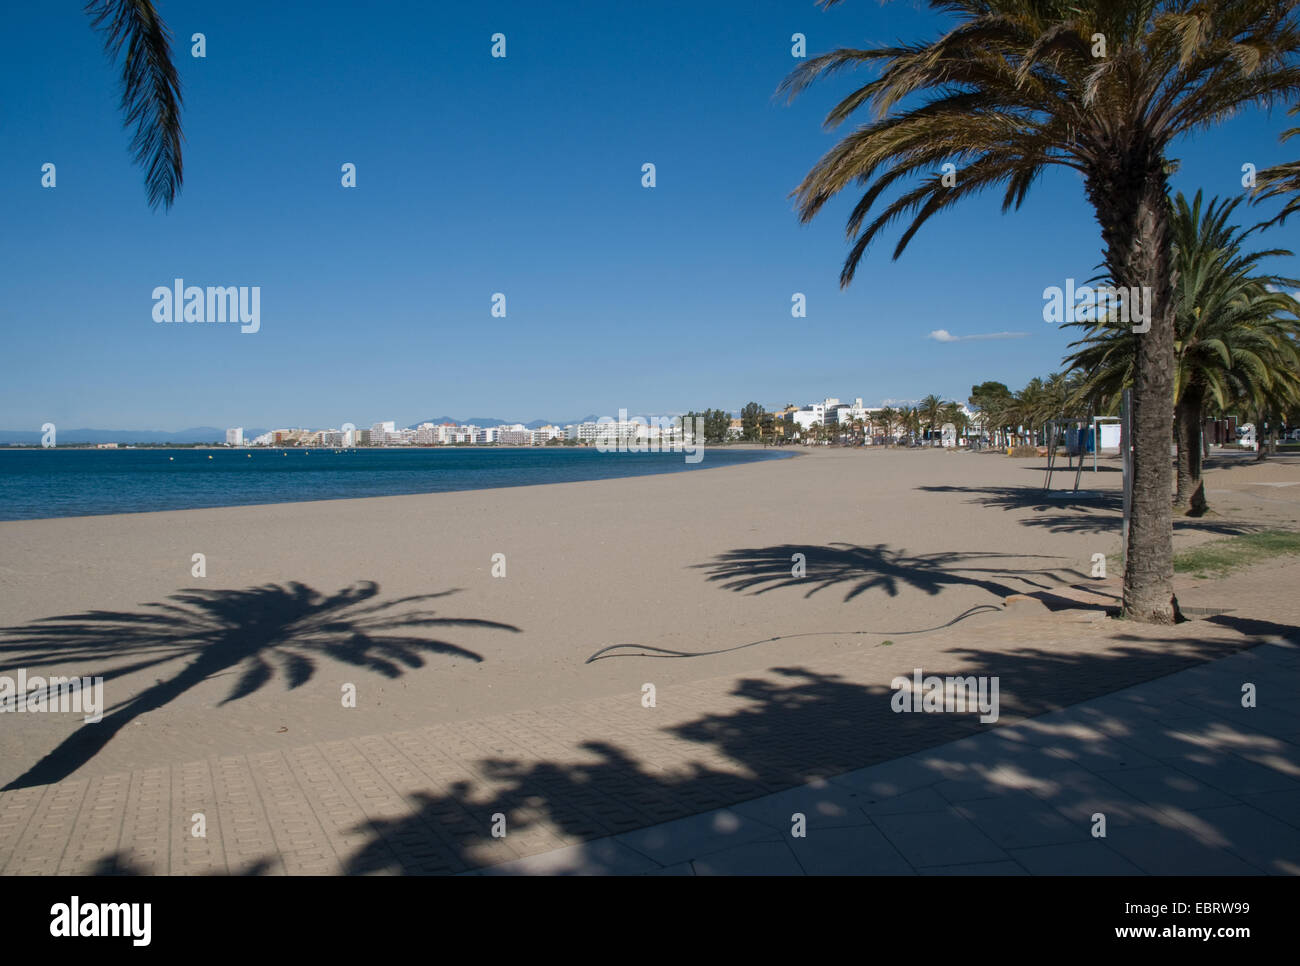 Leere Strandszene entlang der katalanischen Küste Spaniens mit Rosen-Resort im Hintergrund und Palmen, die lange Schatten werfen Stockfoto